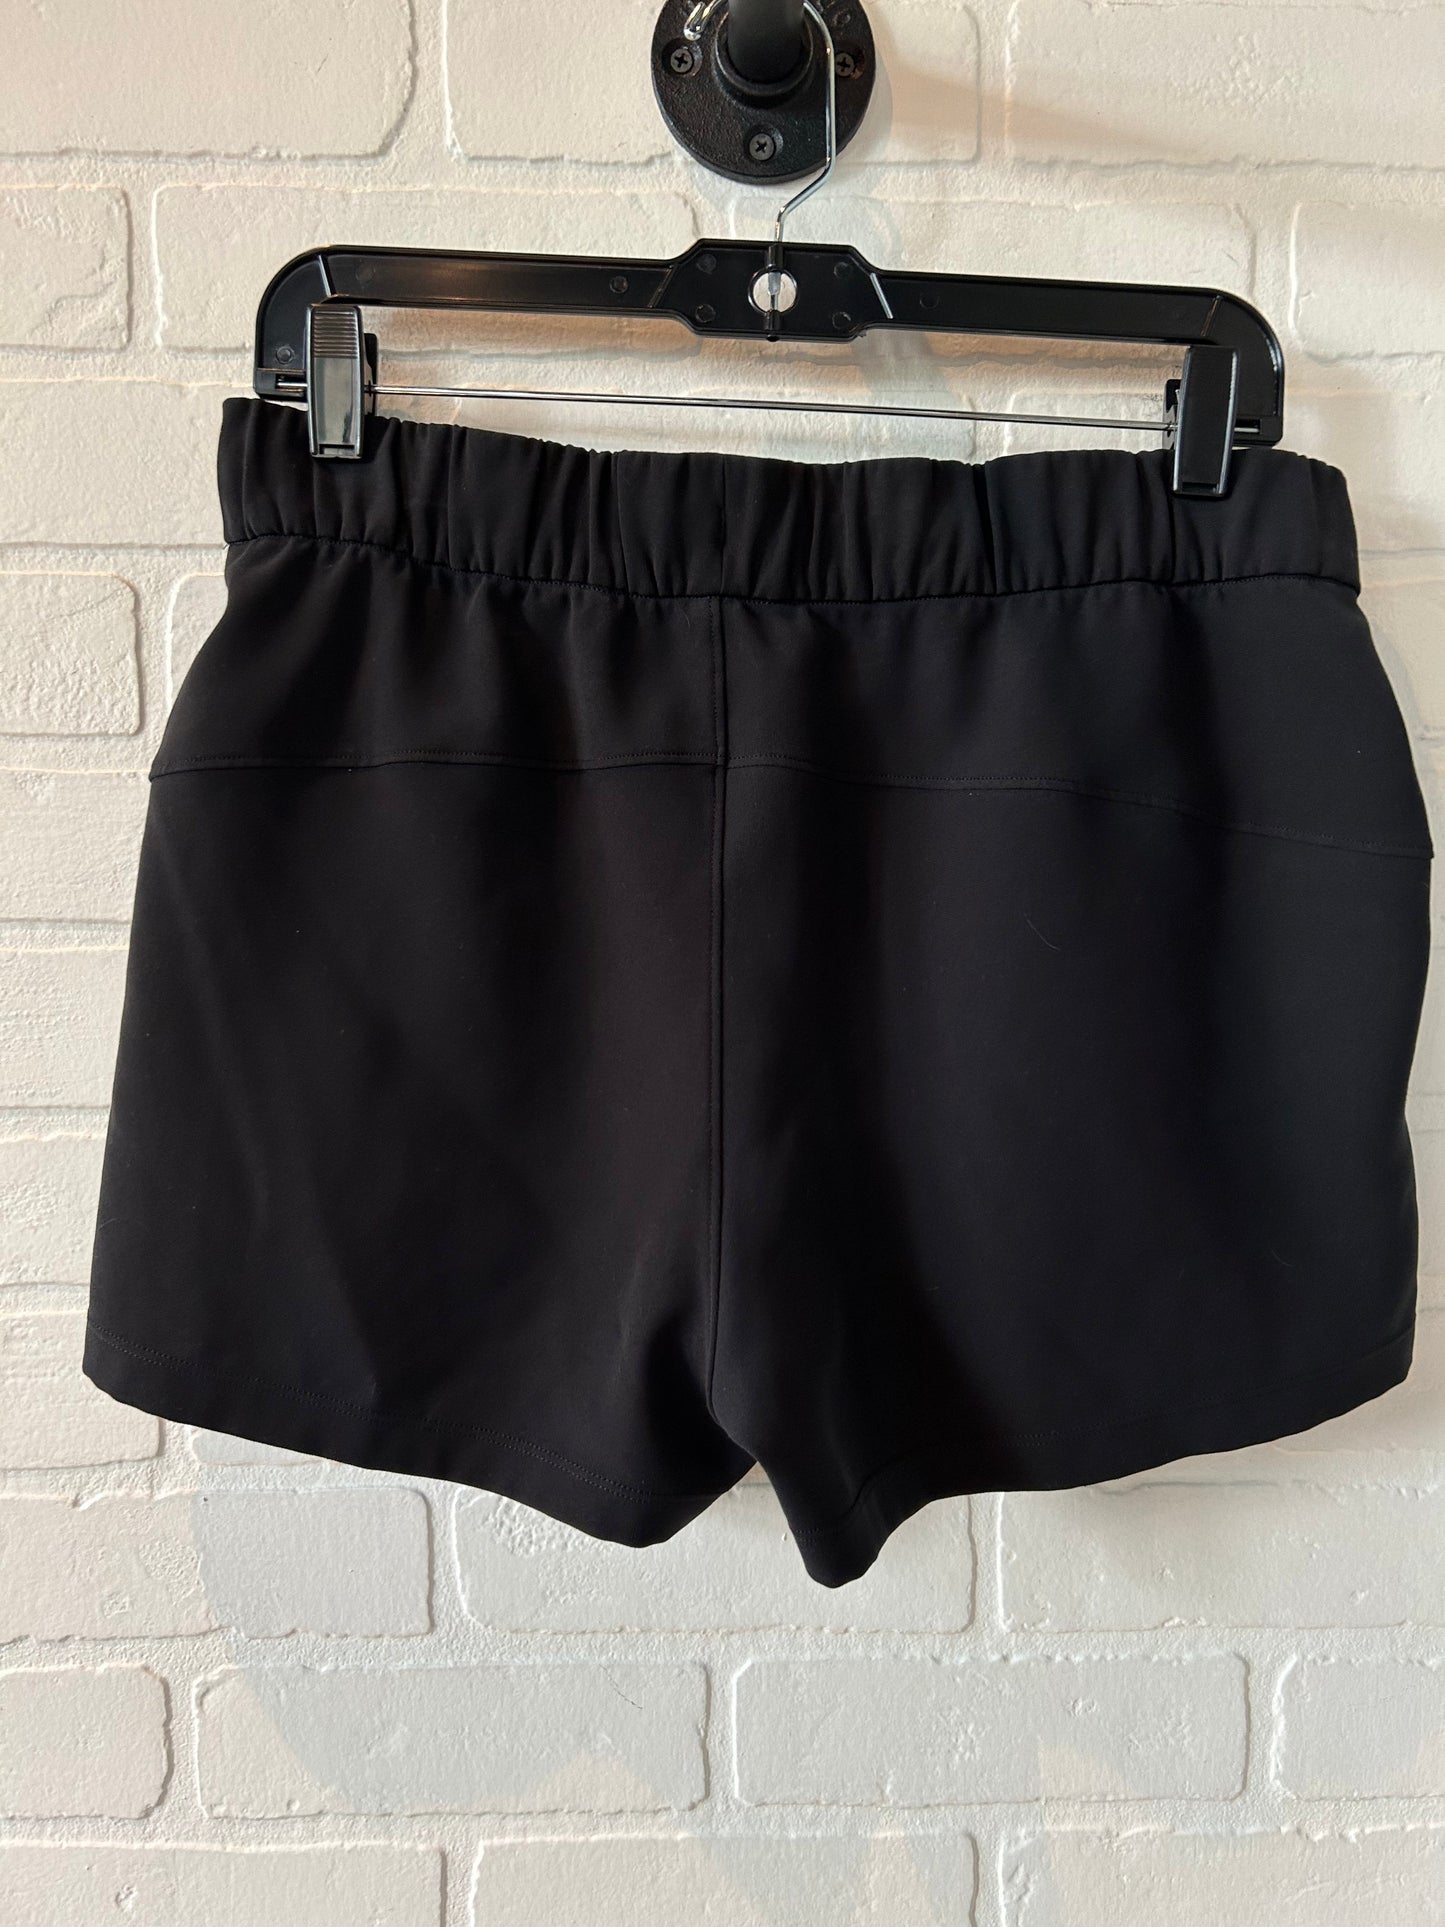 Black Athletic Shorts Lululemon, Size 8